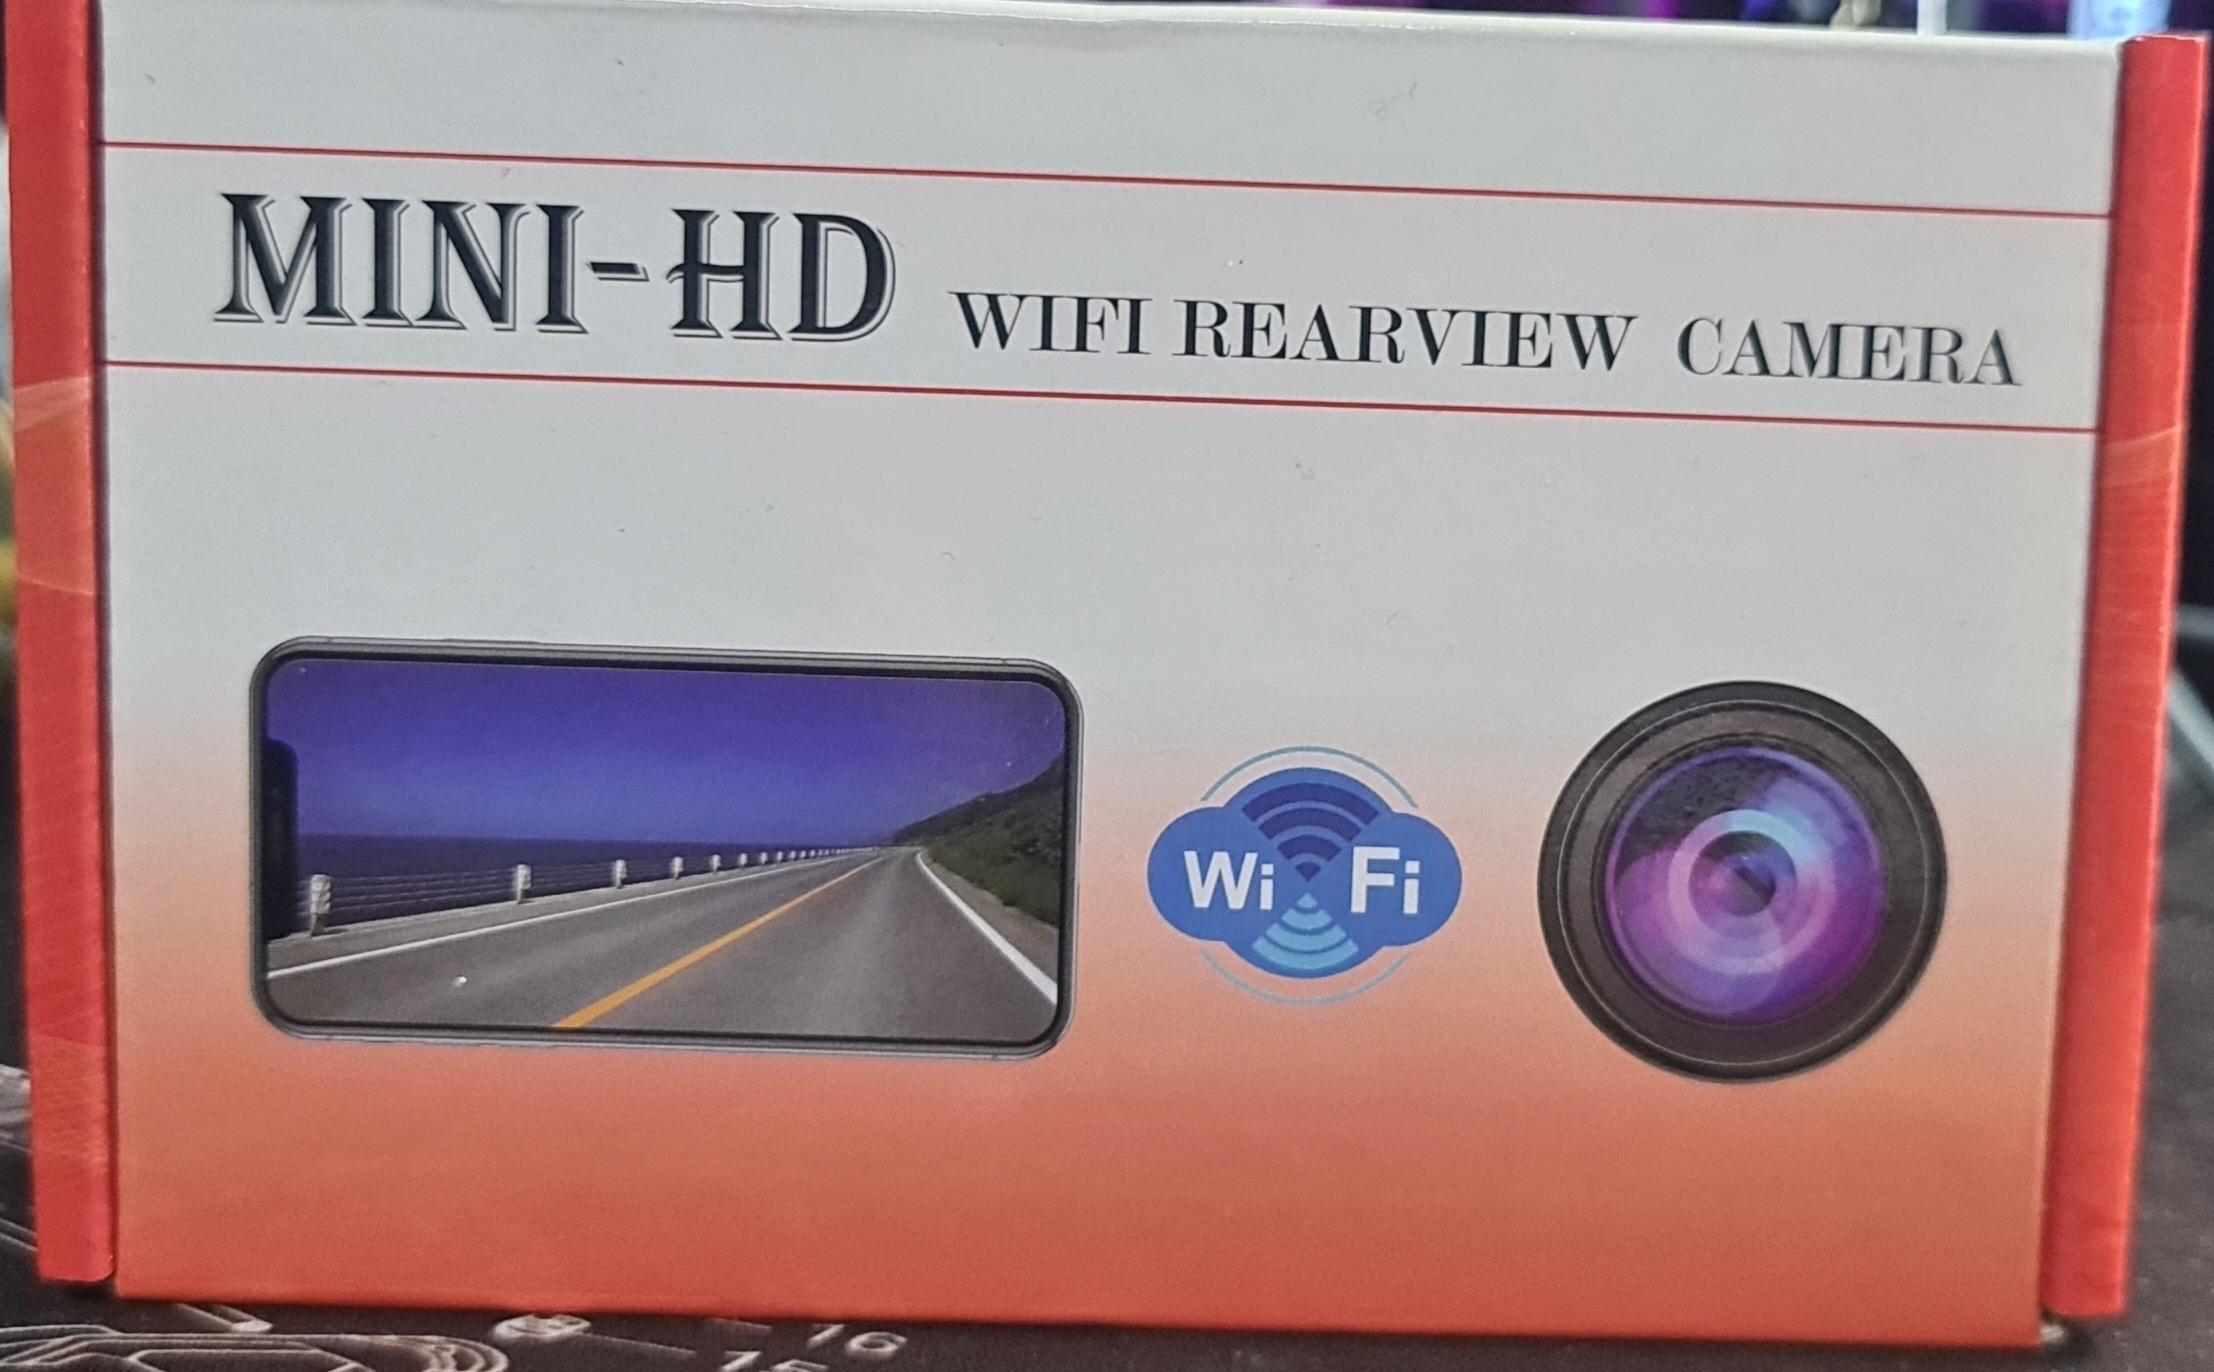 Mini-HD wifi Rearview Camera